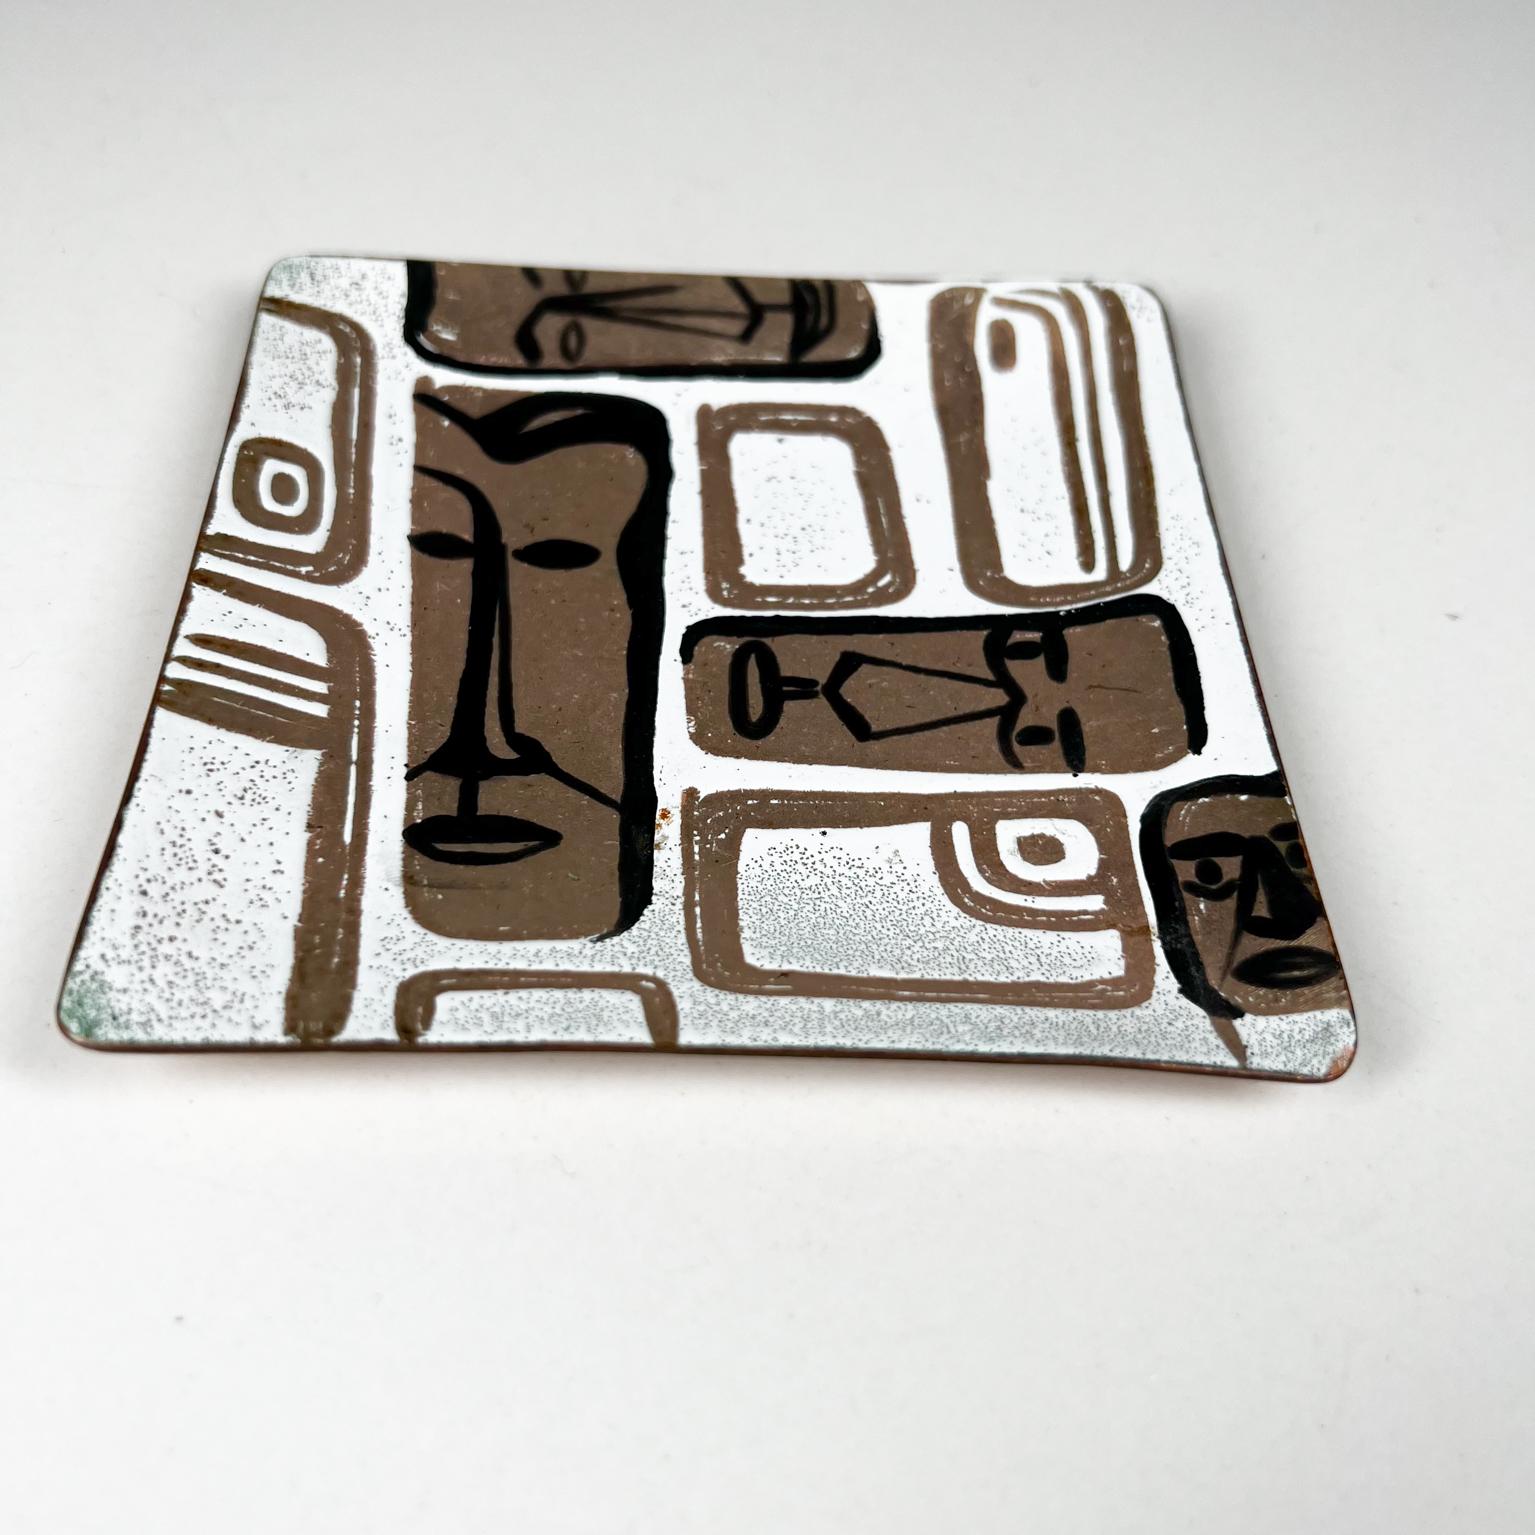 1950er Jahre Carl Wyman Modernist Kupfer-Emaille-Teller afrikanischen Motiv Ohio
Quadratischer Teller aus Kupferemail 
Unterzeichnet
4 x 4 x .38
Unrestaurierte Vintage-Platte aus Vorbesitz.
Siehe mitgelieferte Bilder.
